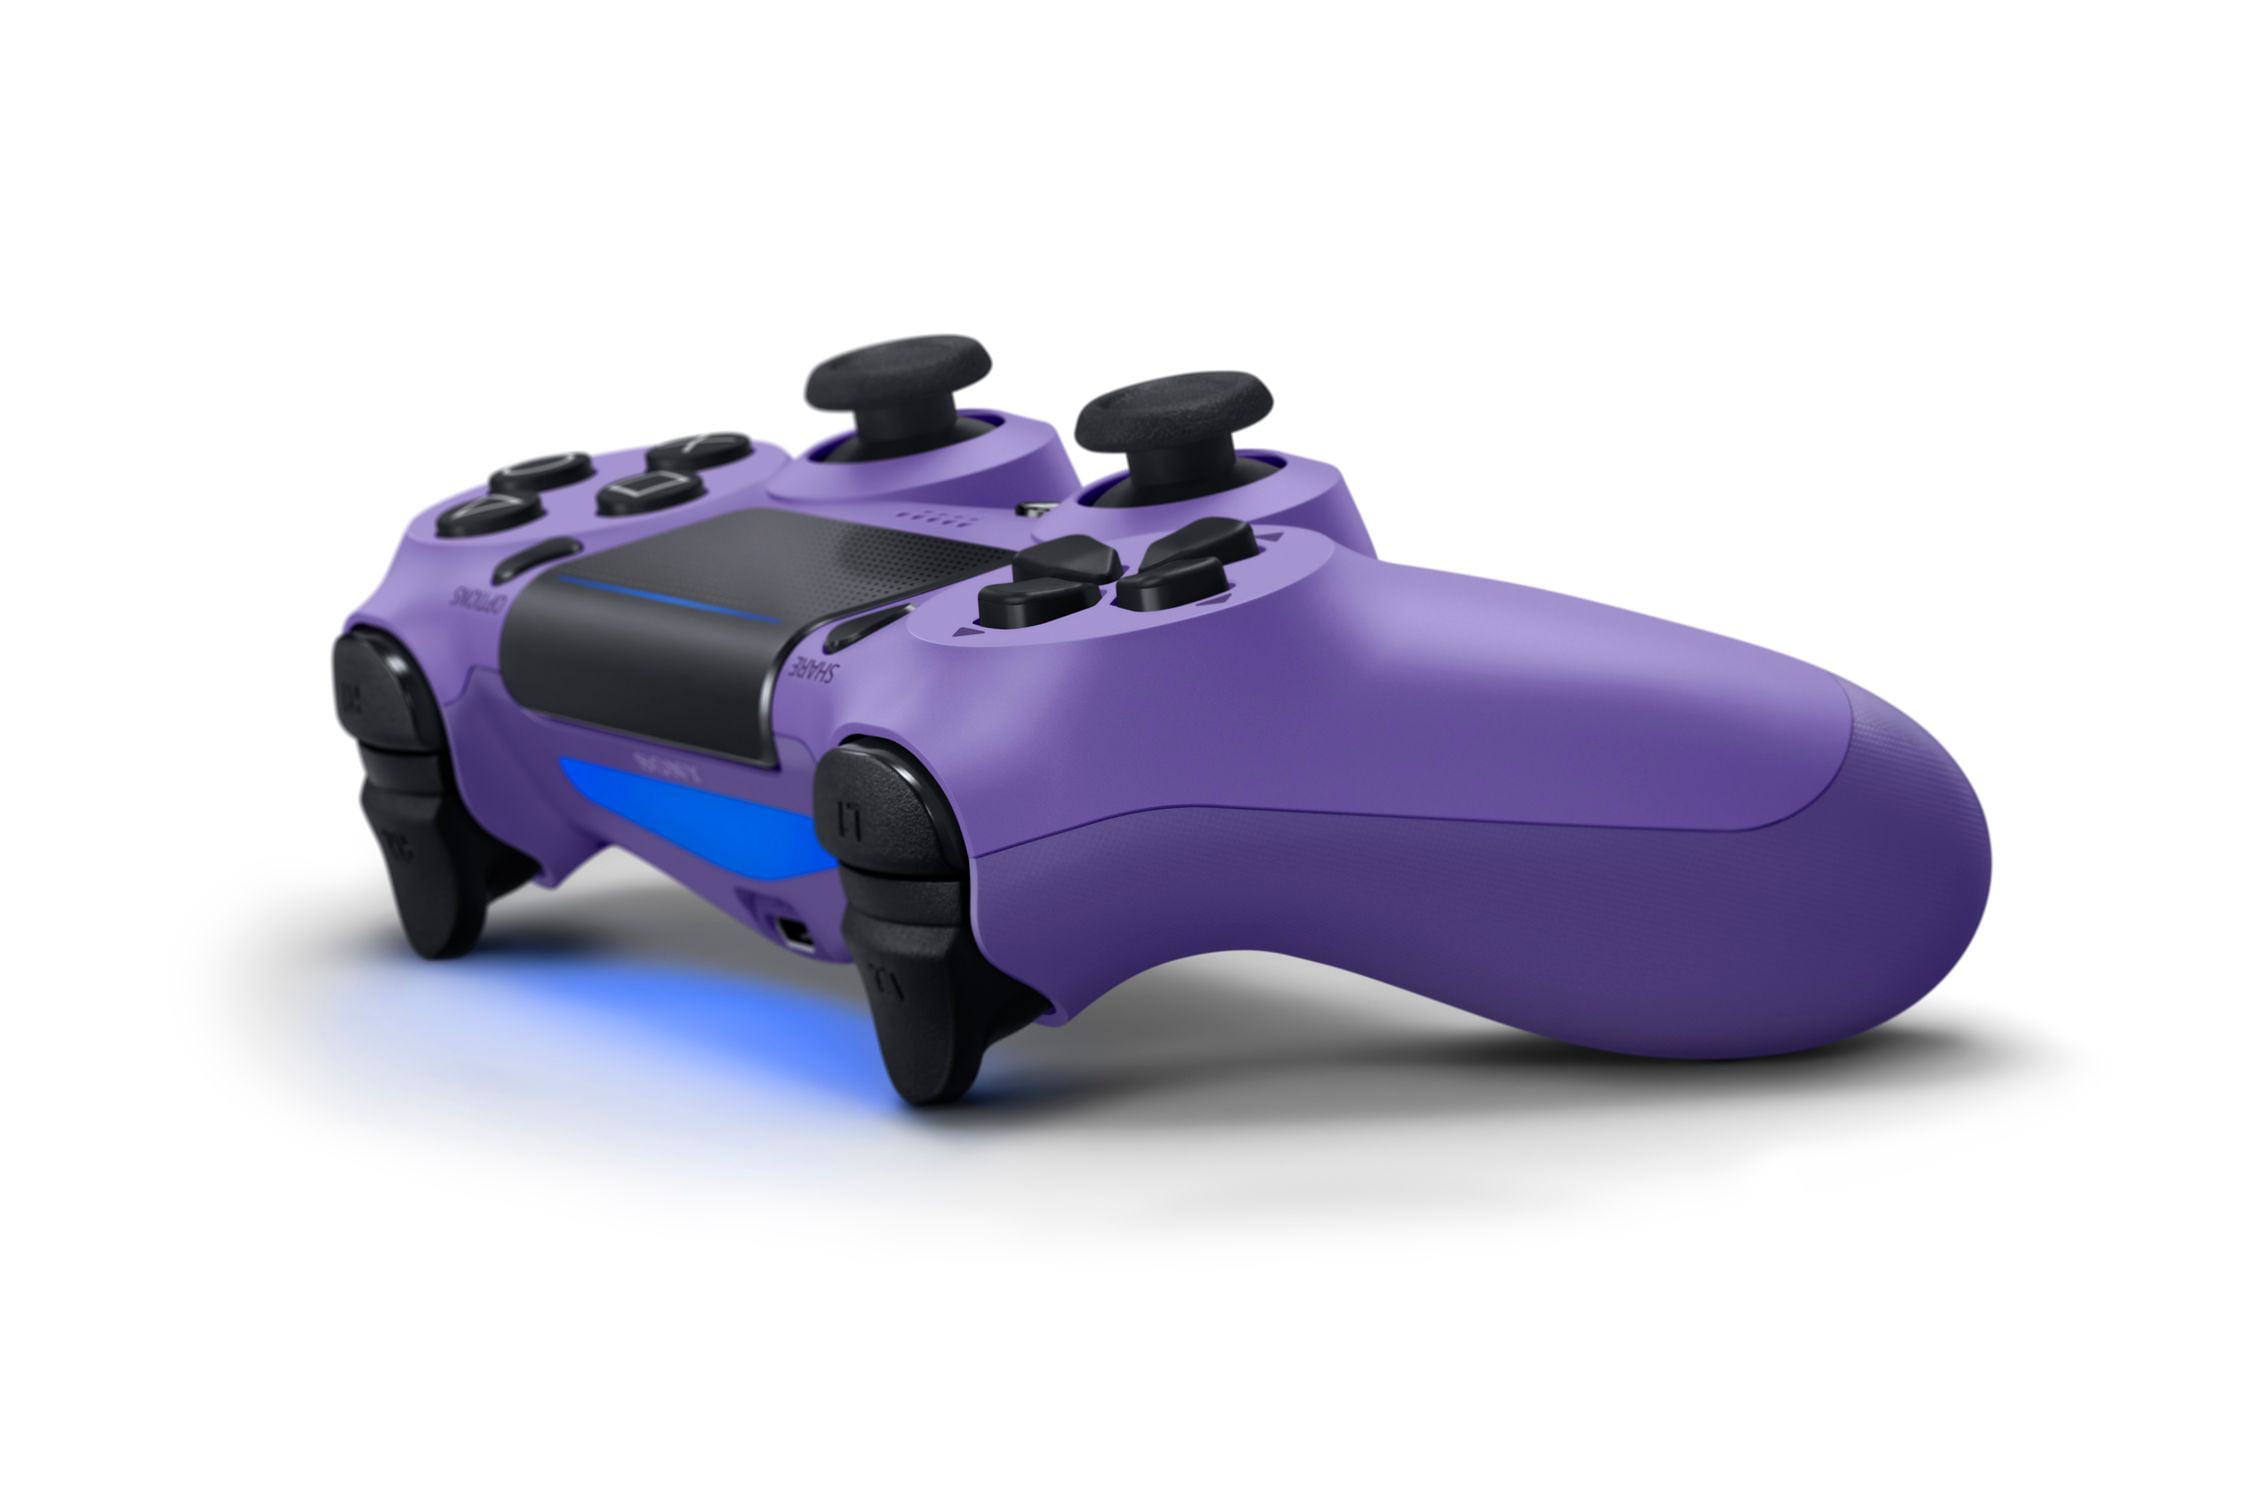 ps4 controller purple light